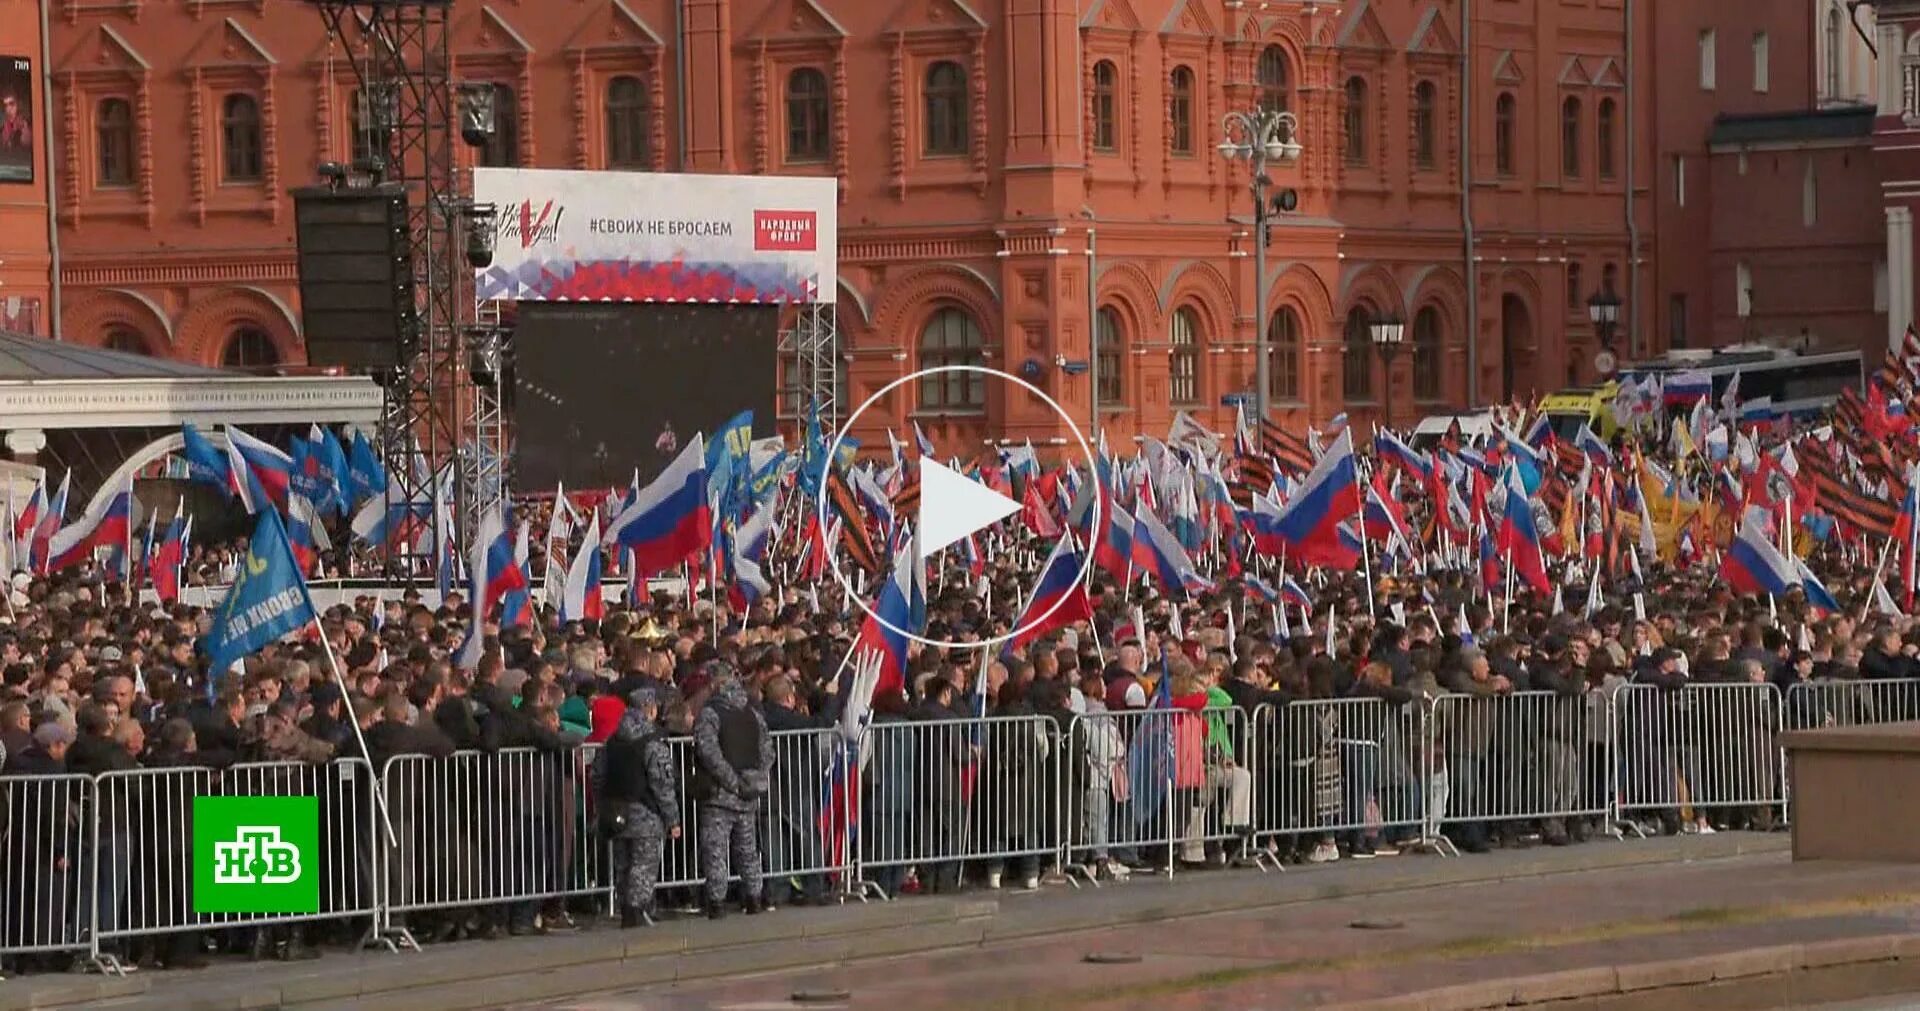 Митинг в поддержку сегодня. Митинг в поддержку России. Митинг в Москве в поддержку референдума. Россия человек. Митинг на Манежной площади.